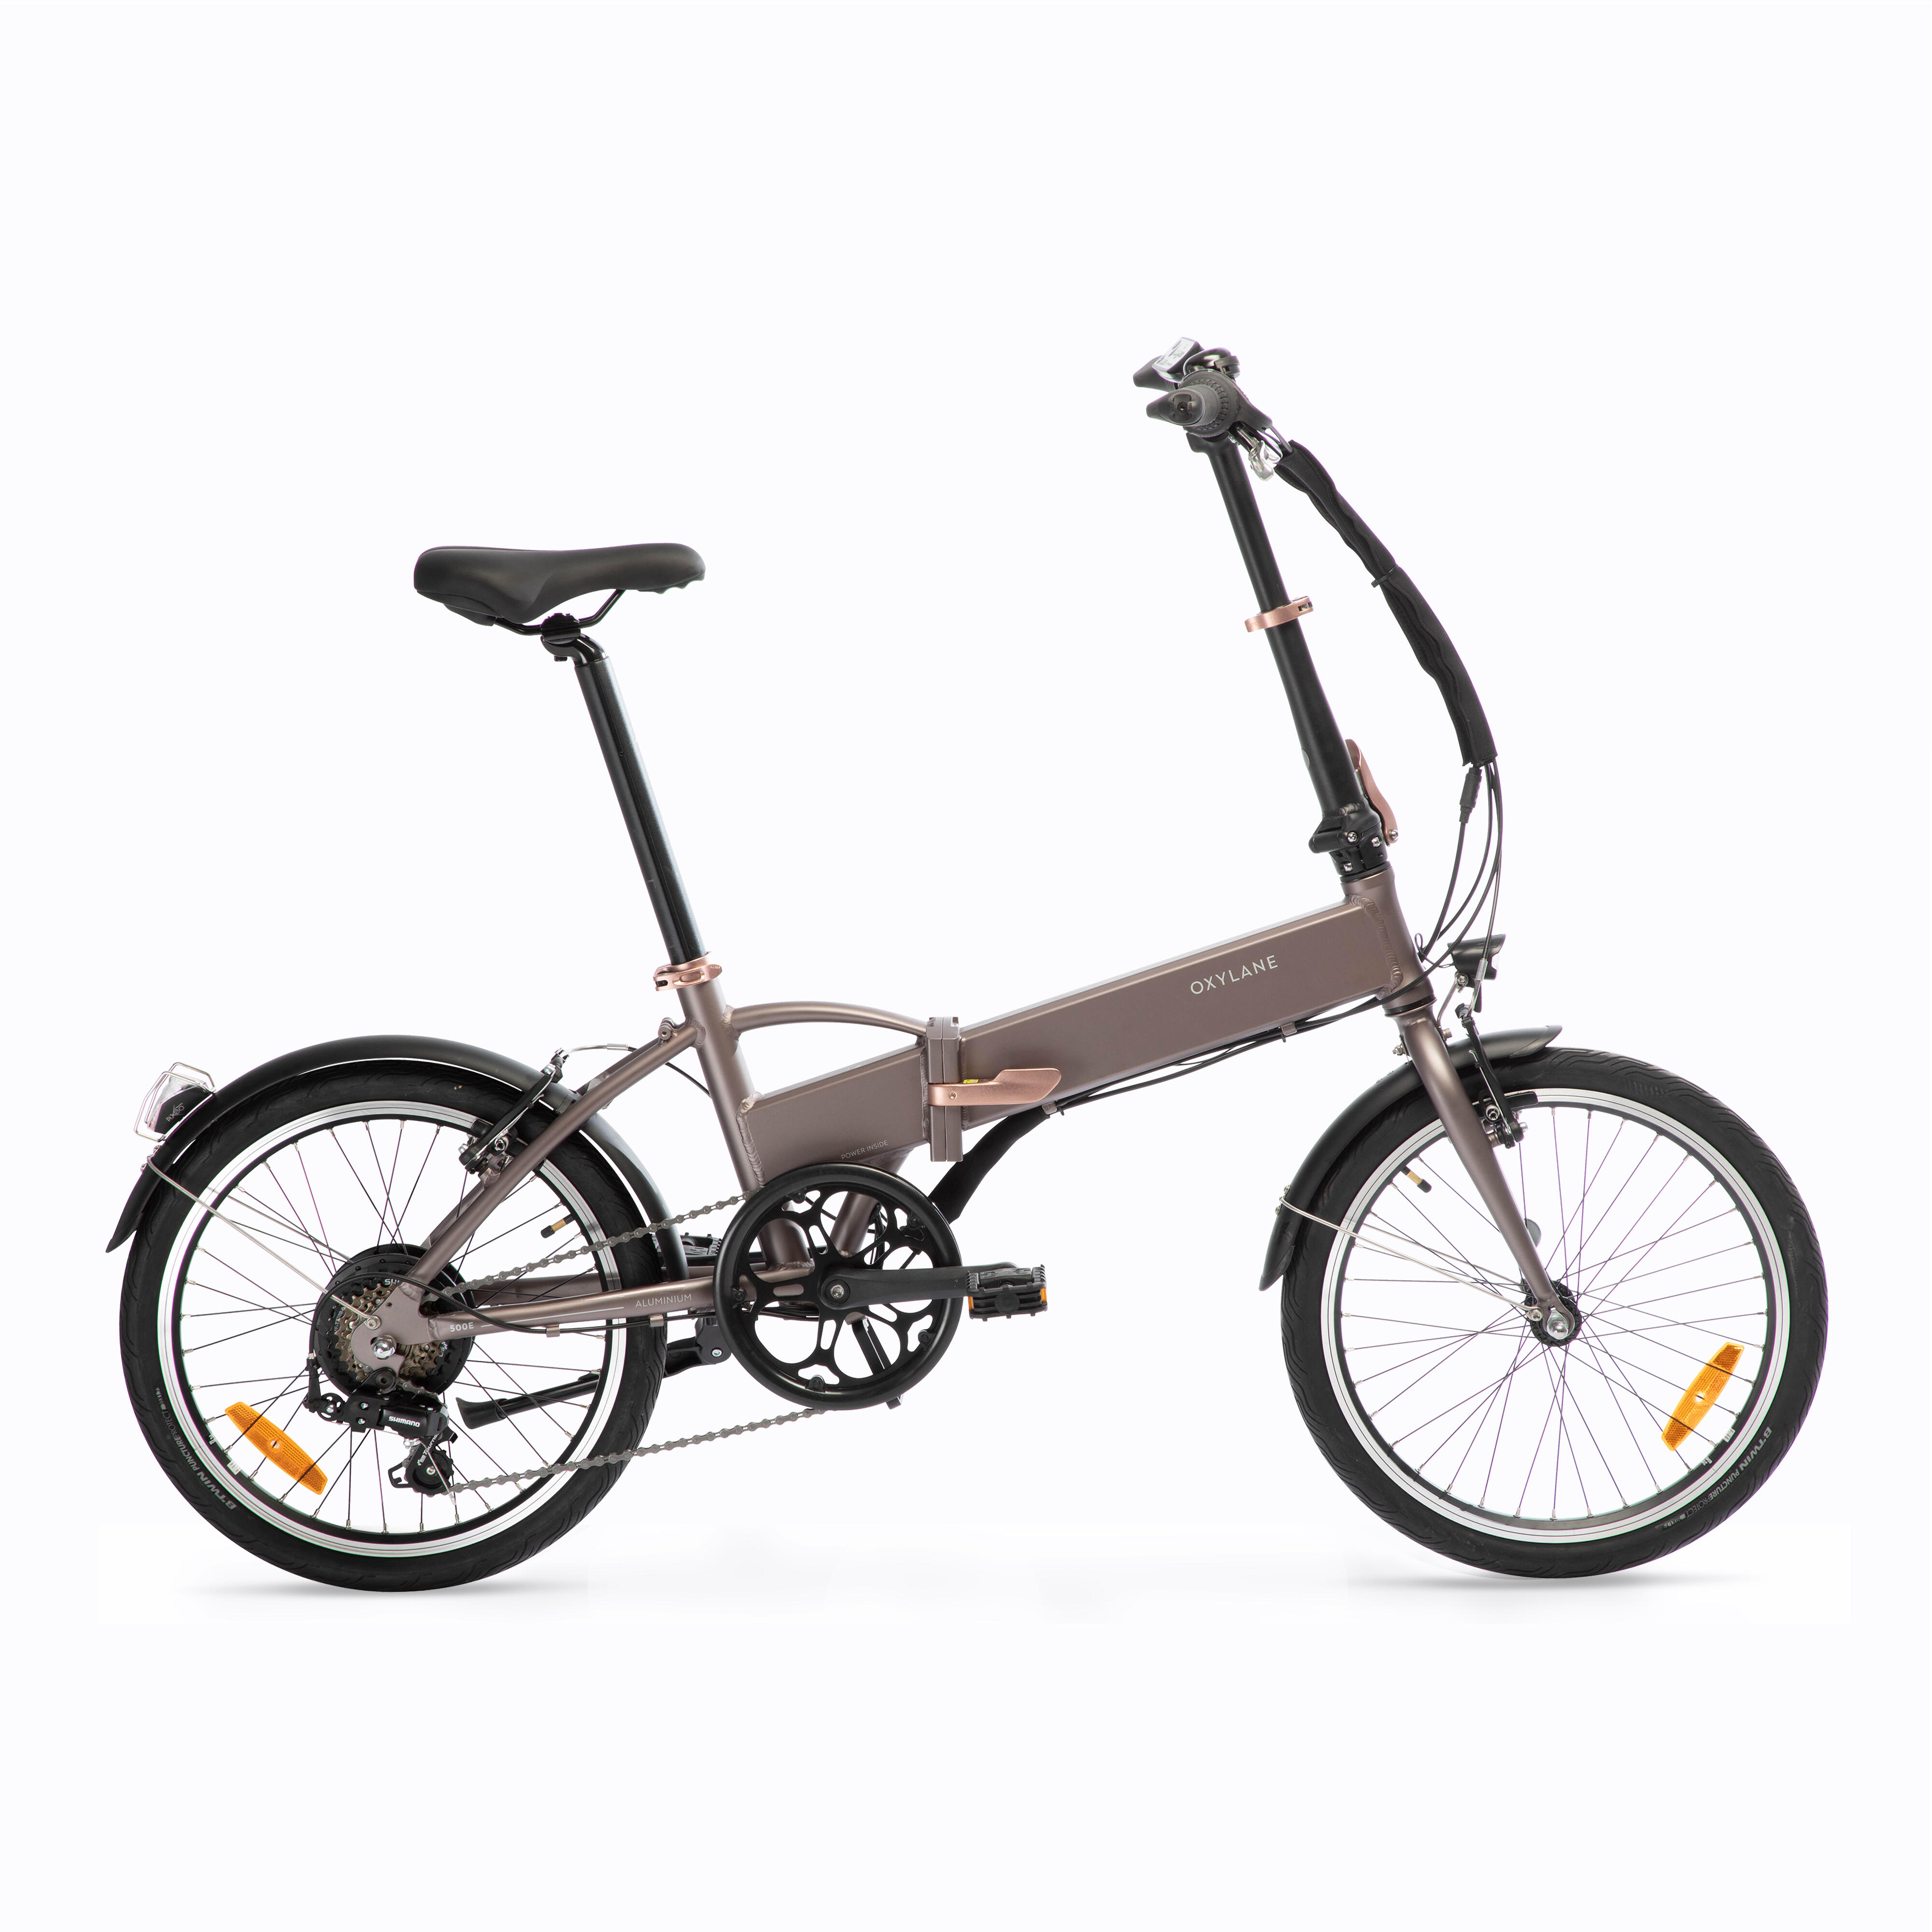 Bicicletă pliabilă cu asistență electrică TILT 500 E La Oferta Online BTWIN imagine La Oferta Online